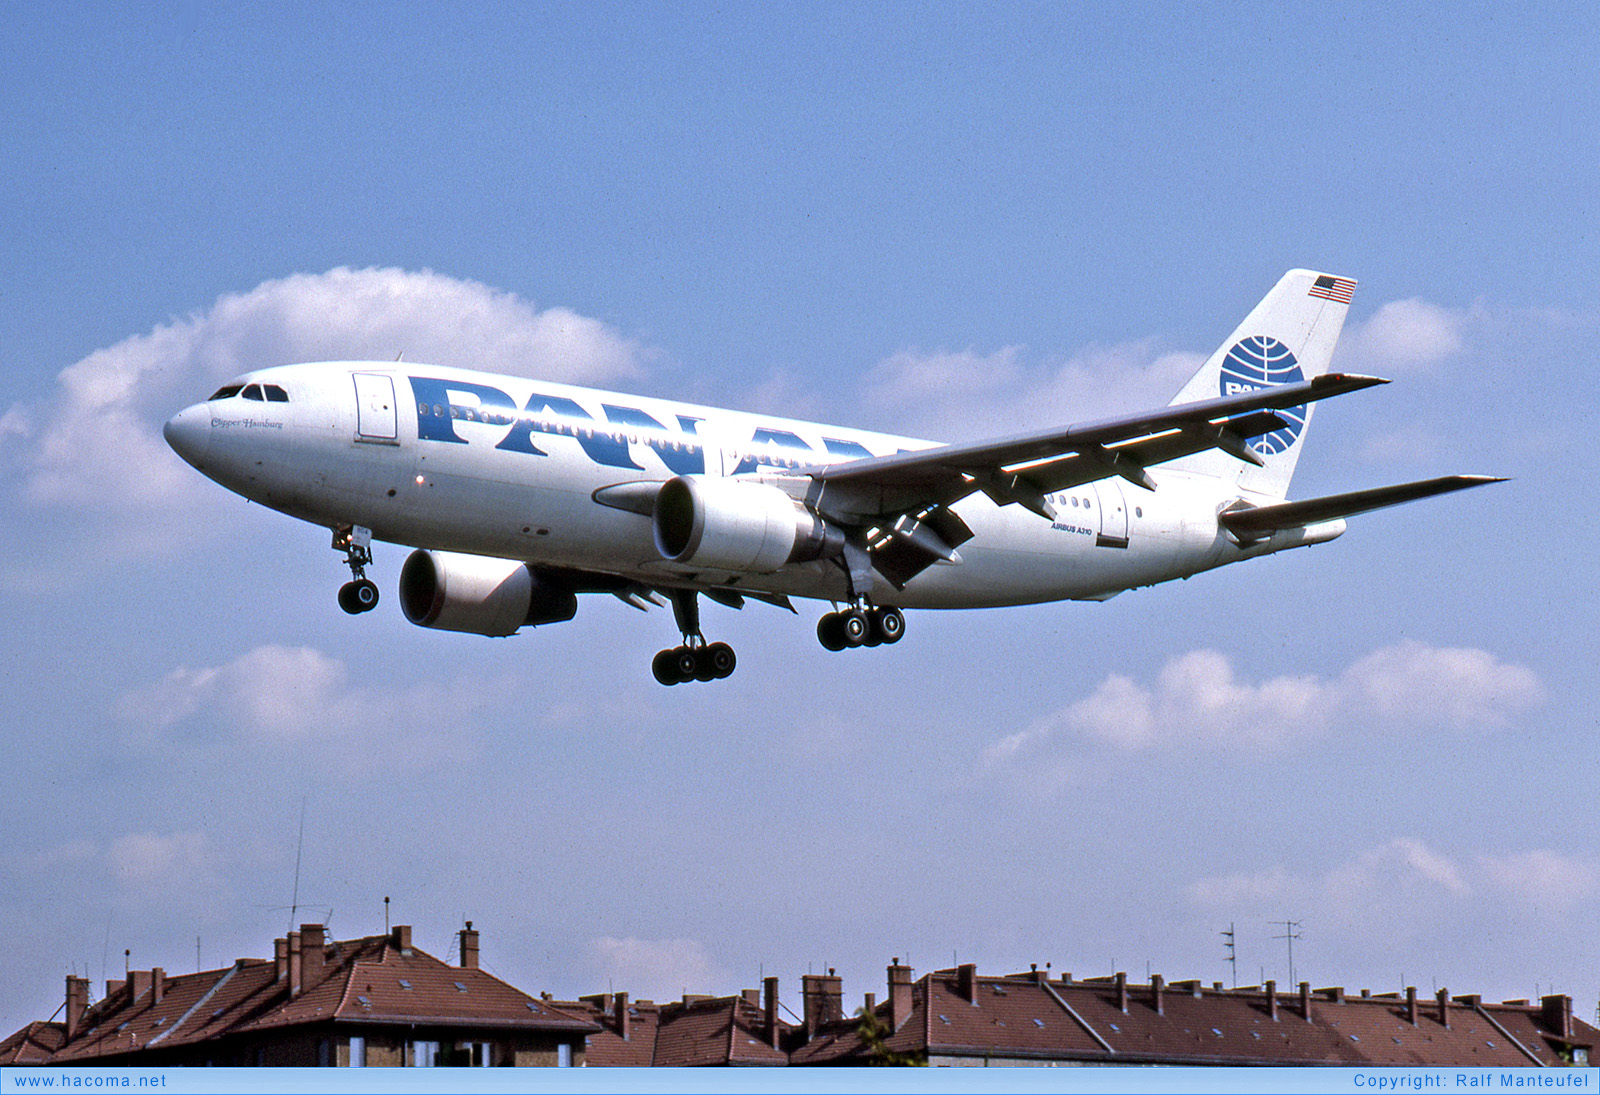 Photo of N804PA - Pan Am Clipper Hamburg - Berlin Tempelhof Airport - May 1989